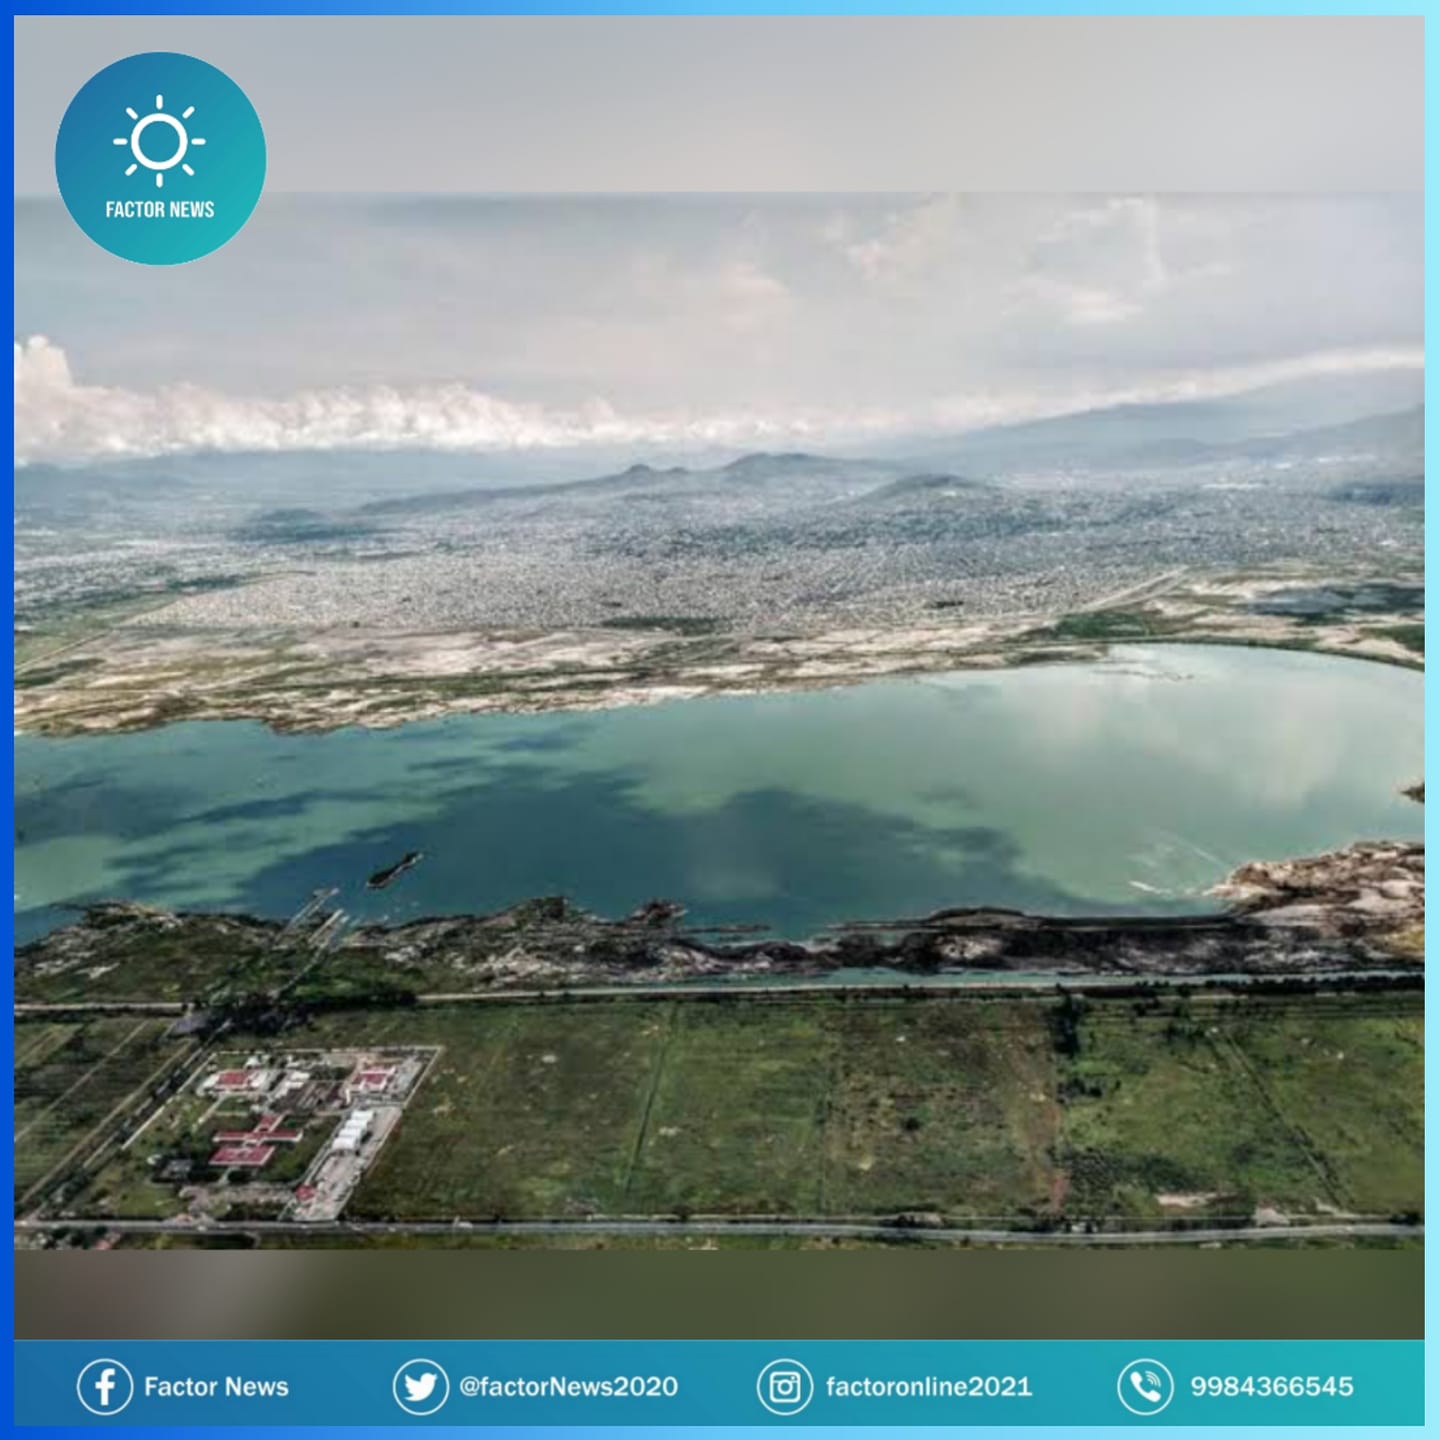 El gobierno de México declaró la nueva “Área de Protección de Recursos Naturales Lago de Texcoco (APRN)” en 5 municipios del Estado de México.